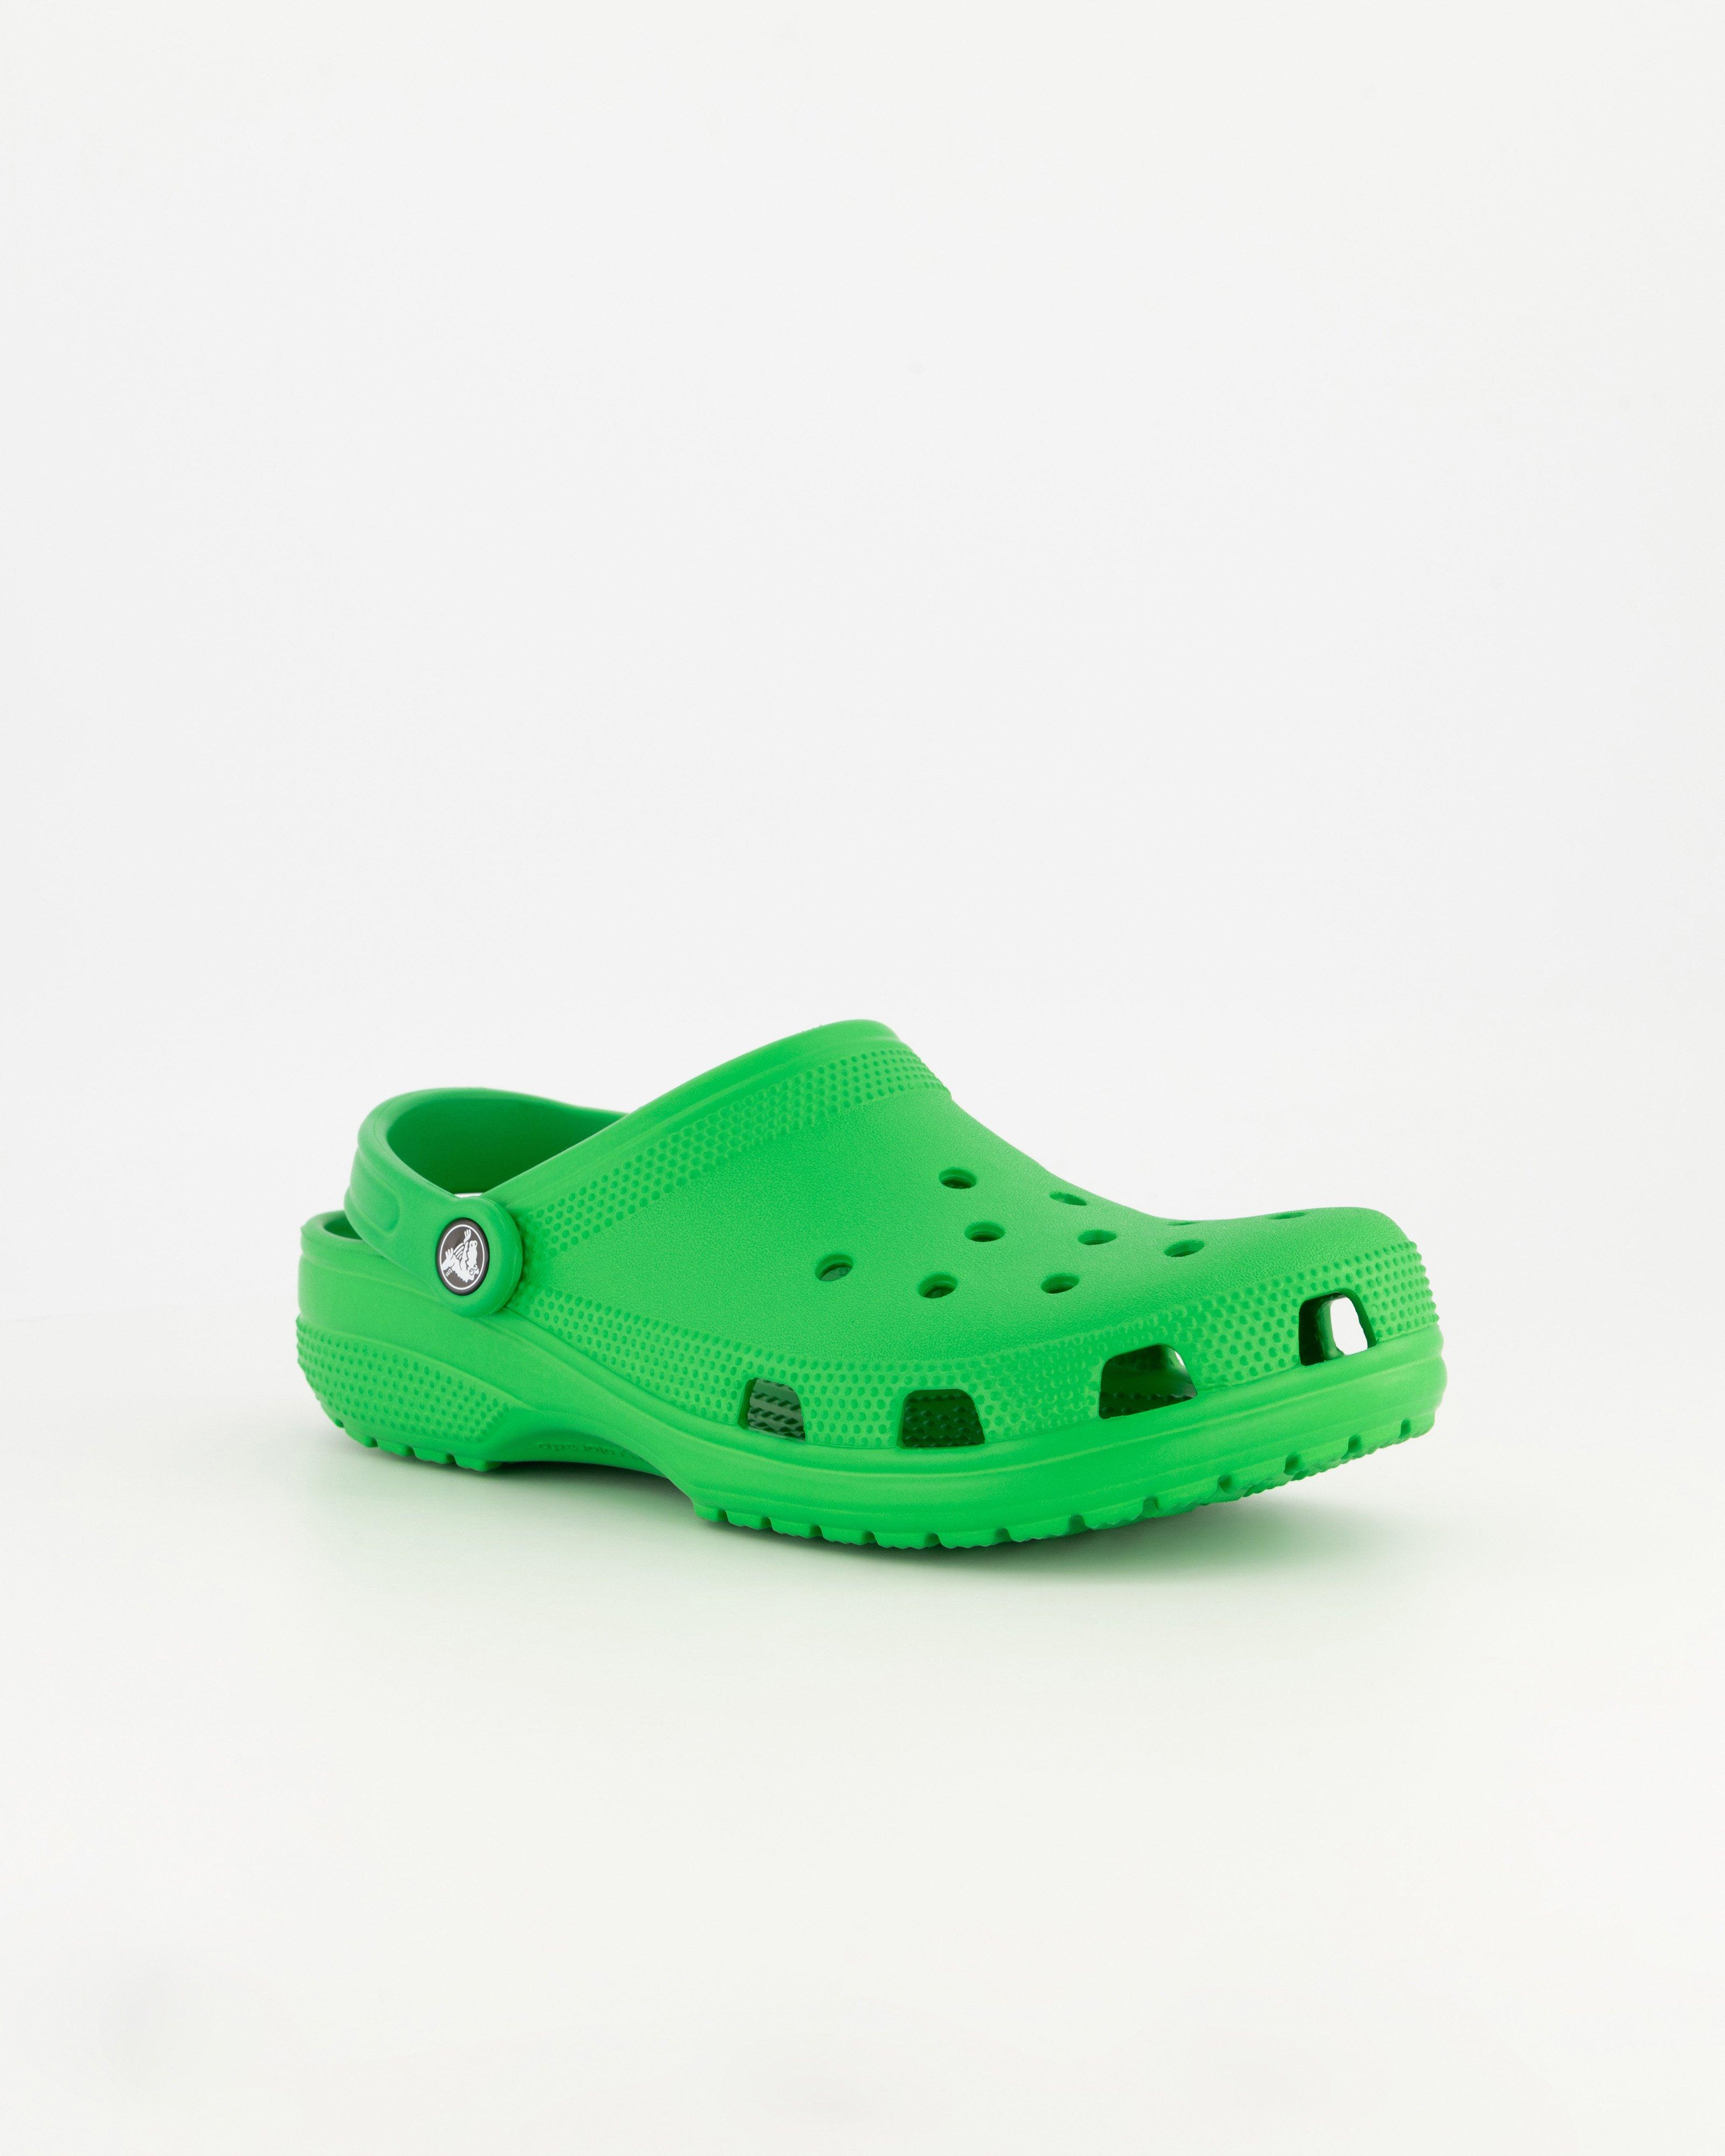 Men's and Women's Crocs Shoes and Sandals For Sale - Cape Union Mart